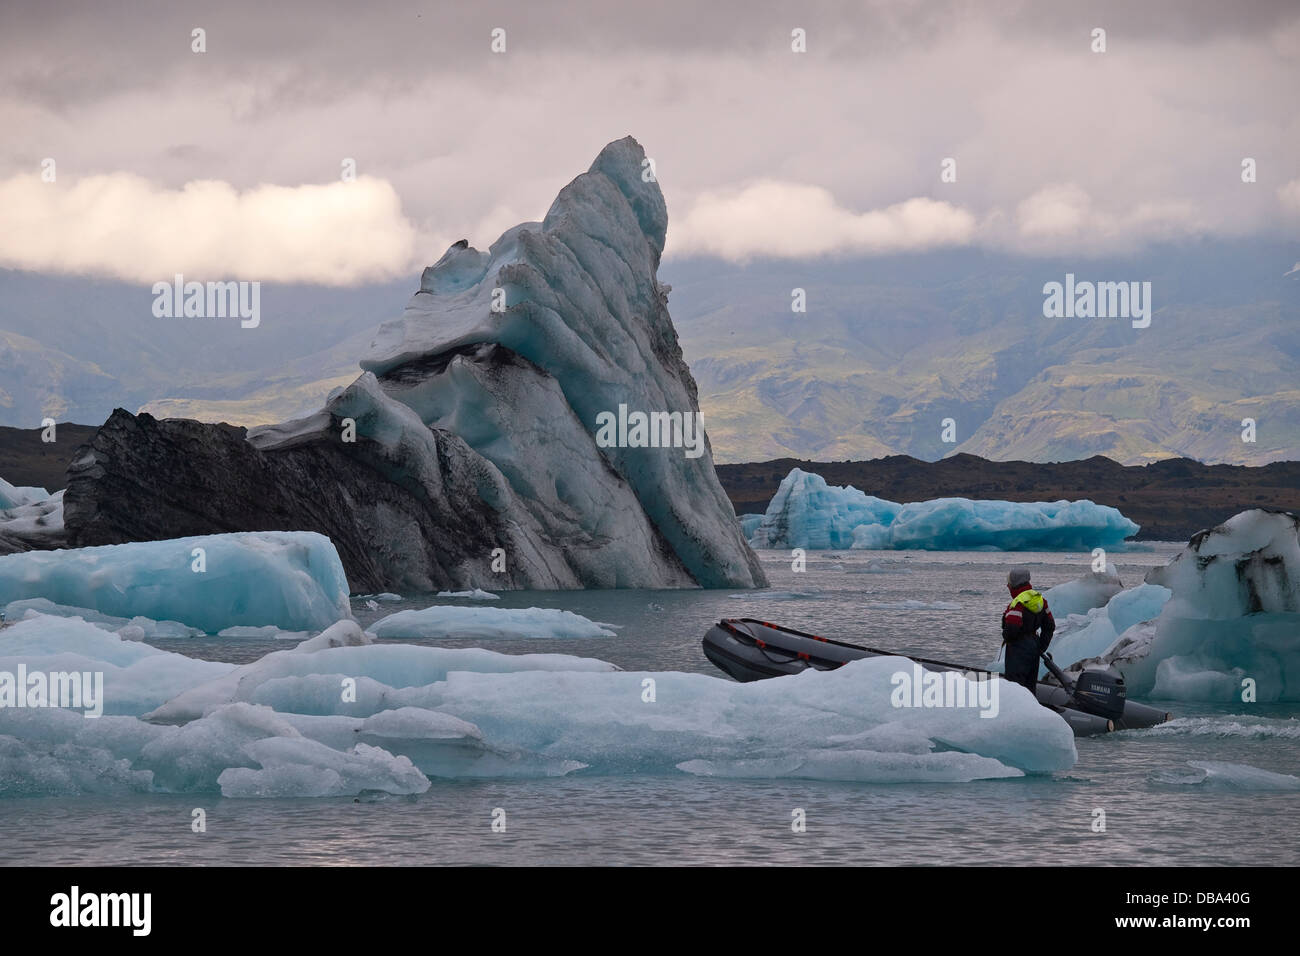 Les icebergs flottant dans le lac de Jökulsárlón, en Islande. Continu formé par les fractures du Breidamerkurjokull, Islande Banque D'Images